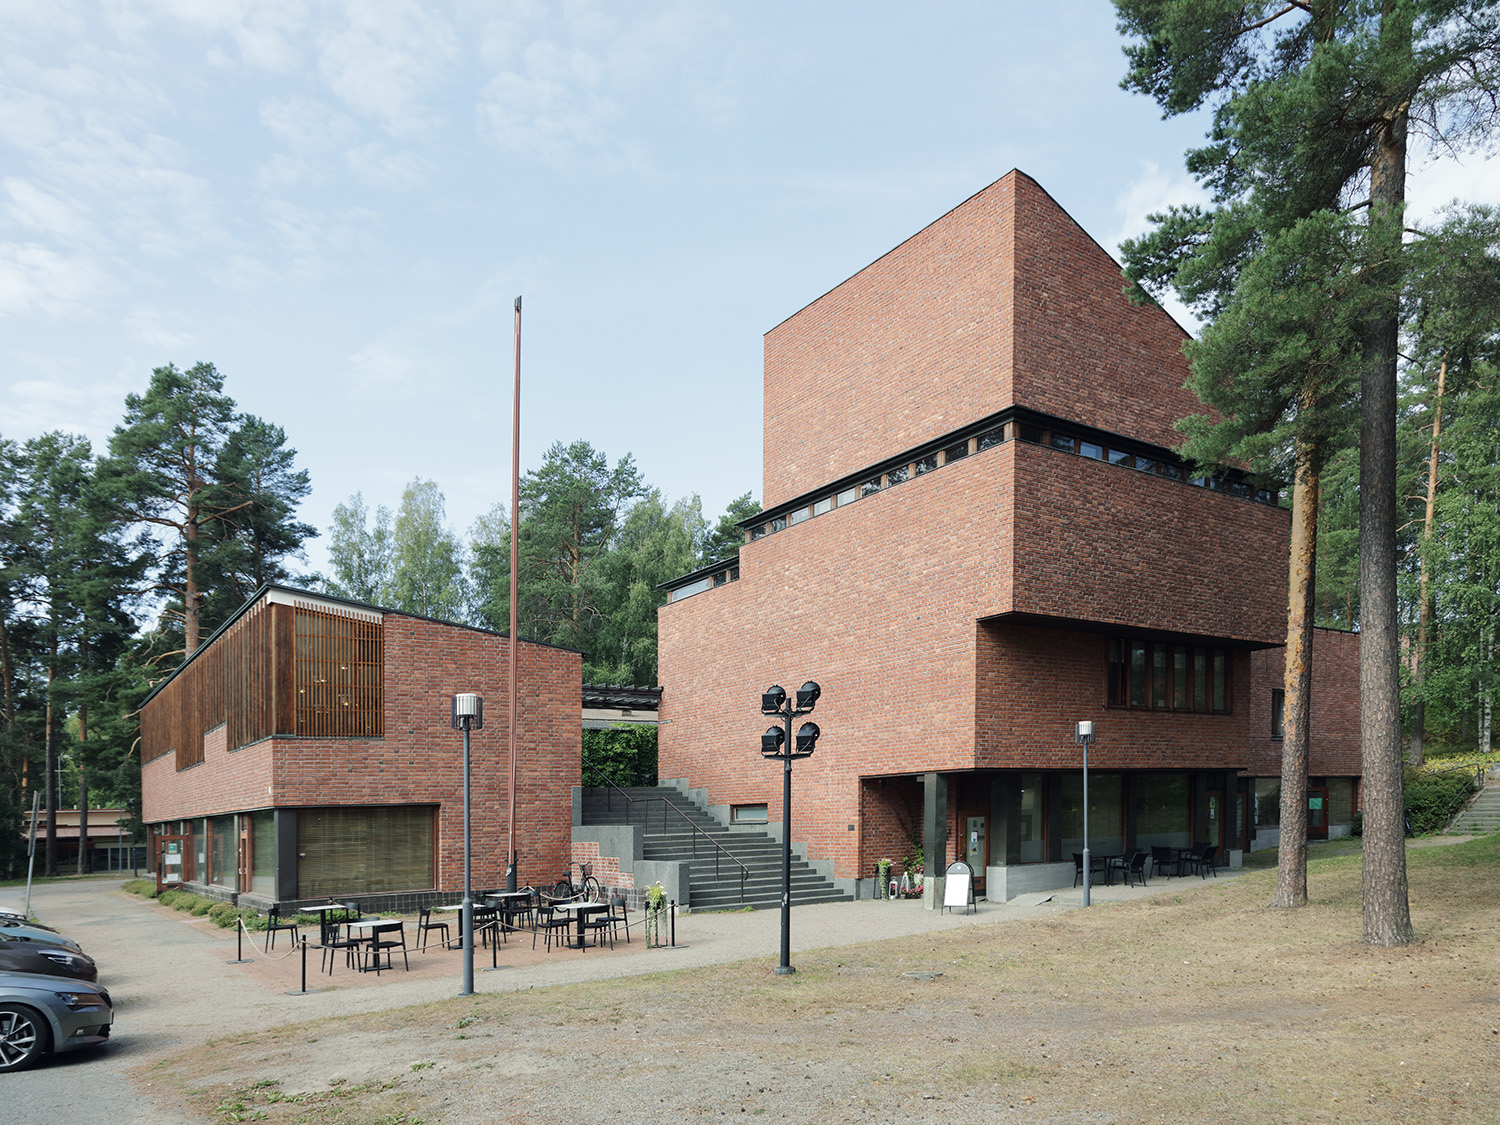 Säynätsalo town hall
Alvar Aalto, 1949
Finland